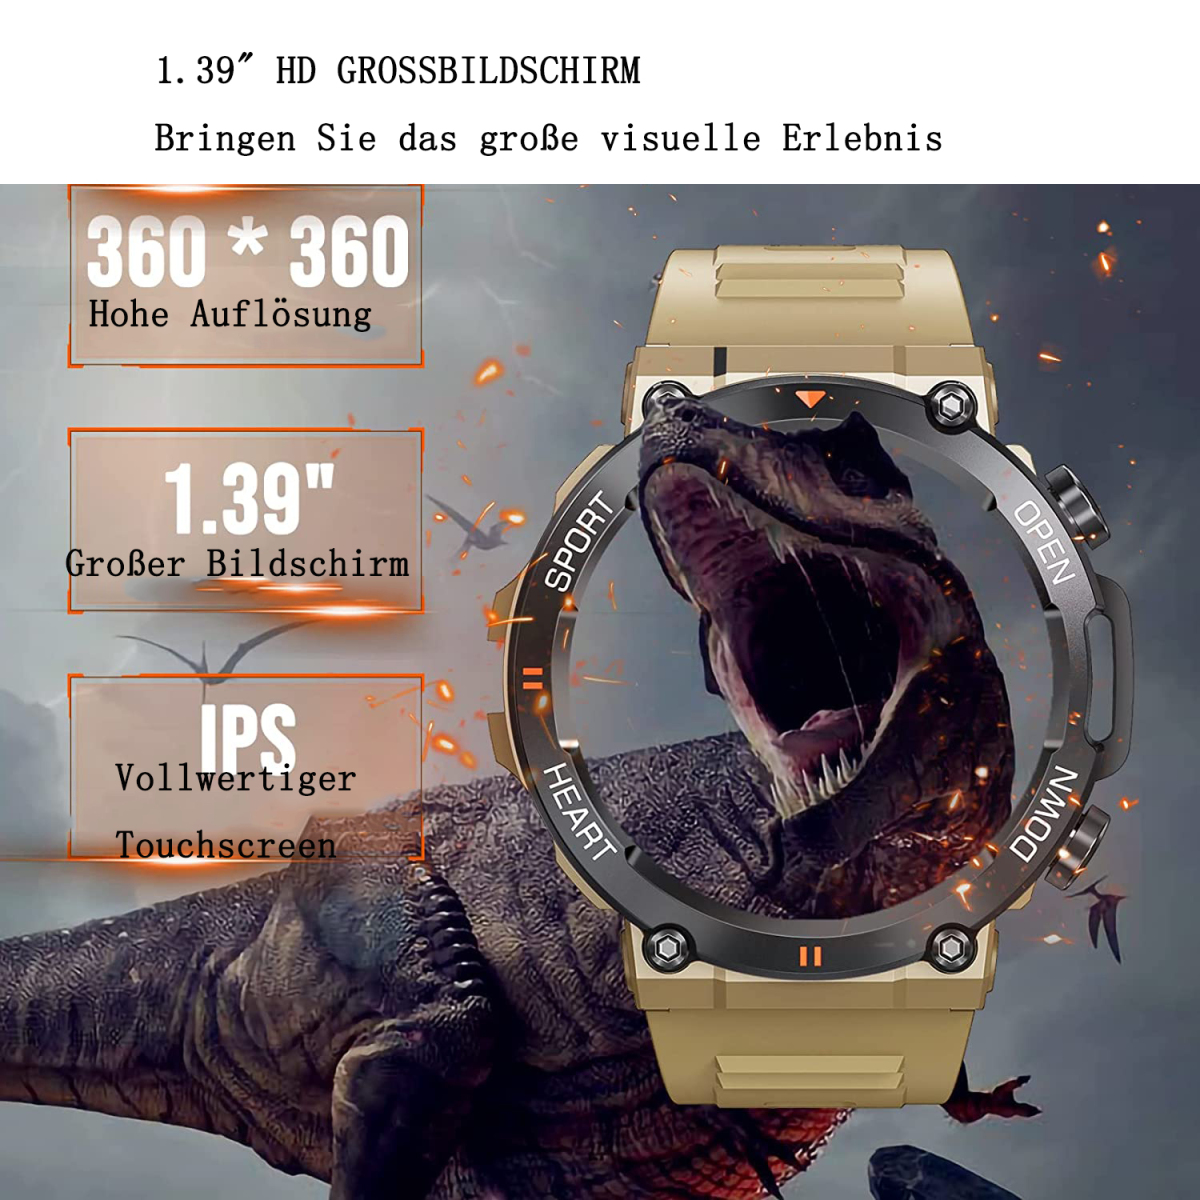 Kieselgel, Smartwatch Khaki ELKUAIE K56Pro